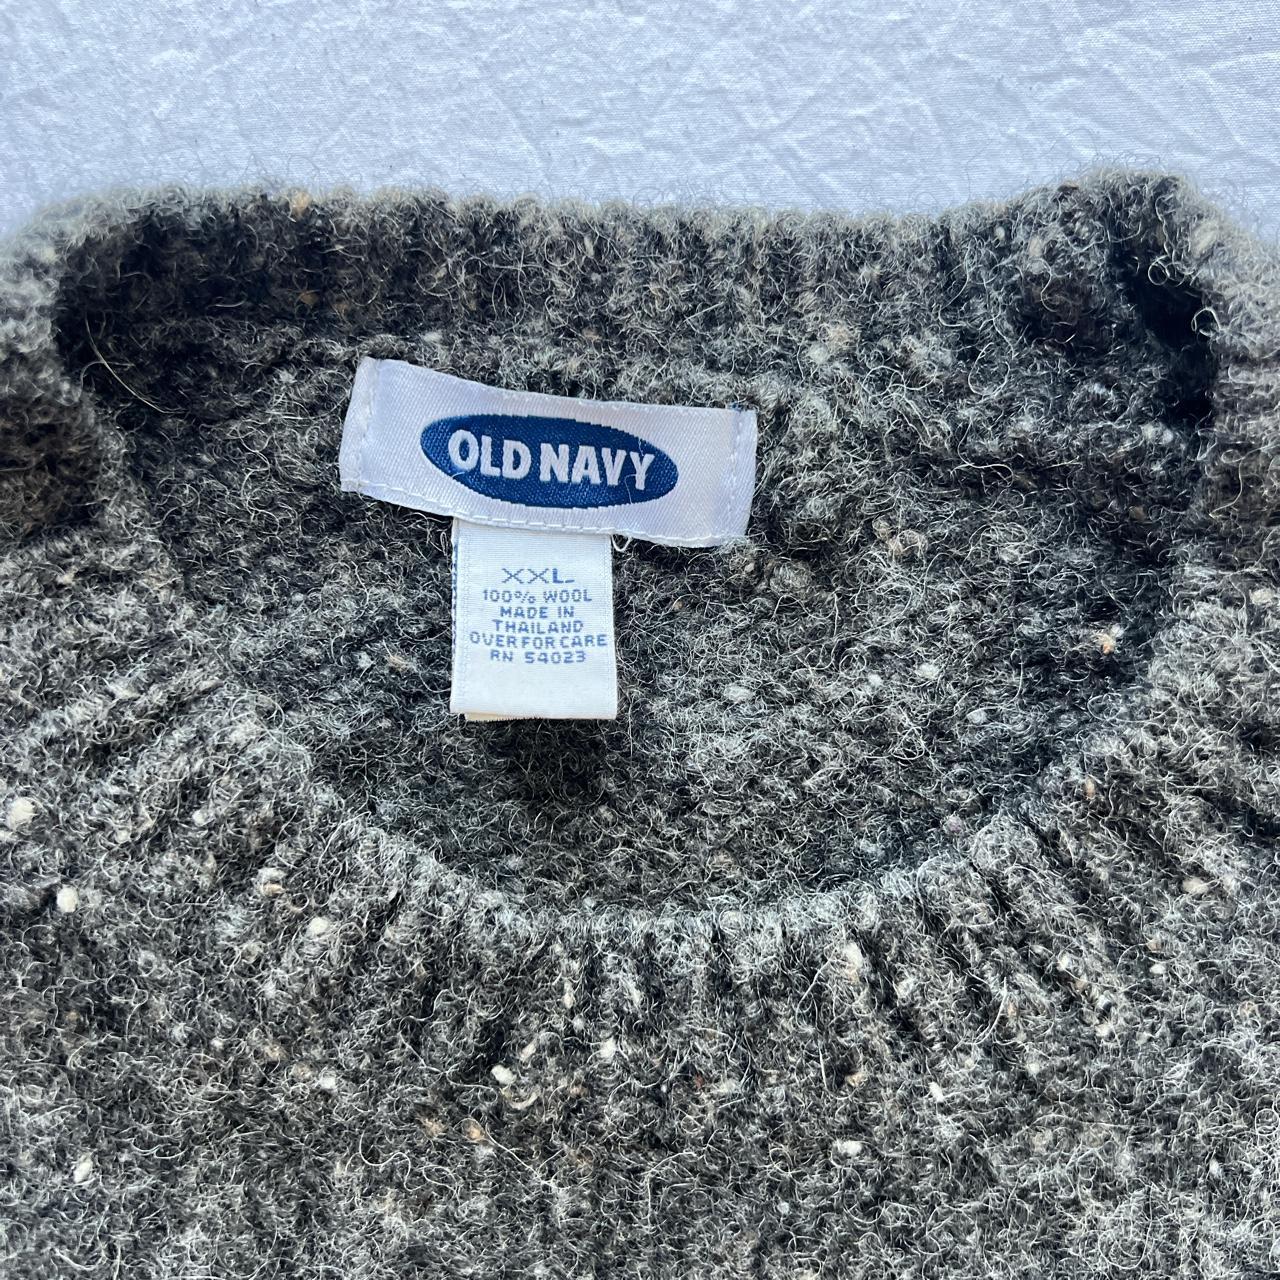 Vintage Grey ‘Old Navy’ Wool sweater - 100%... - Depop